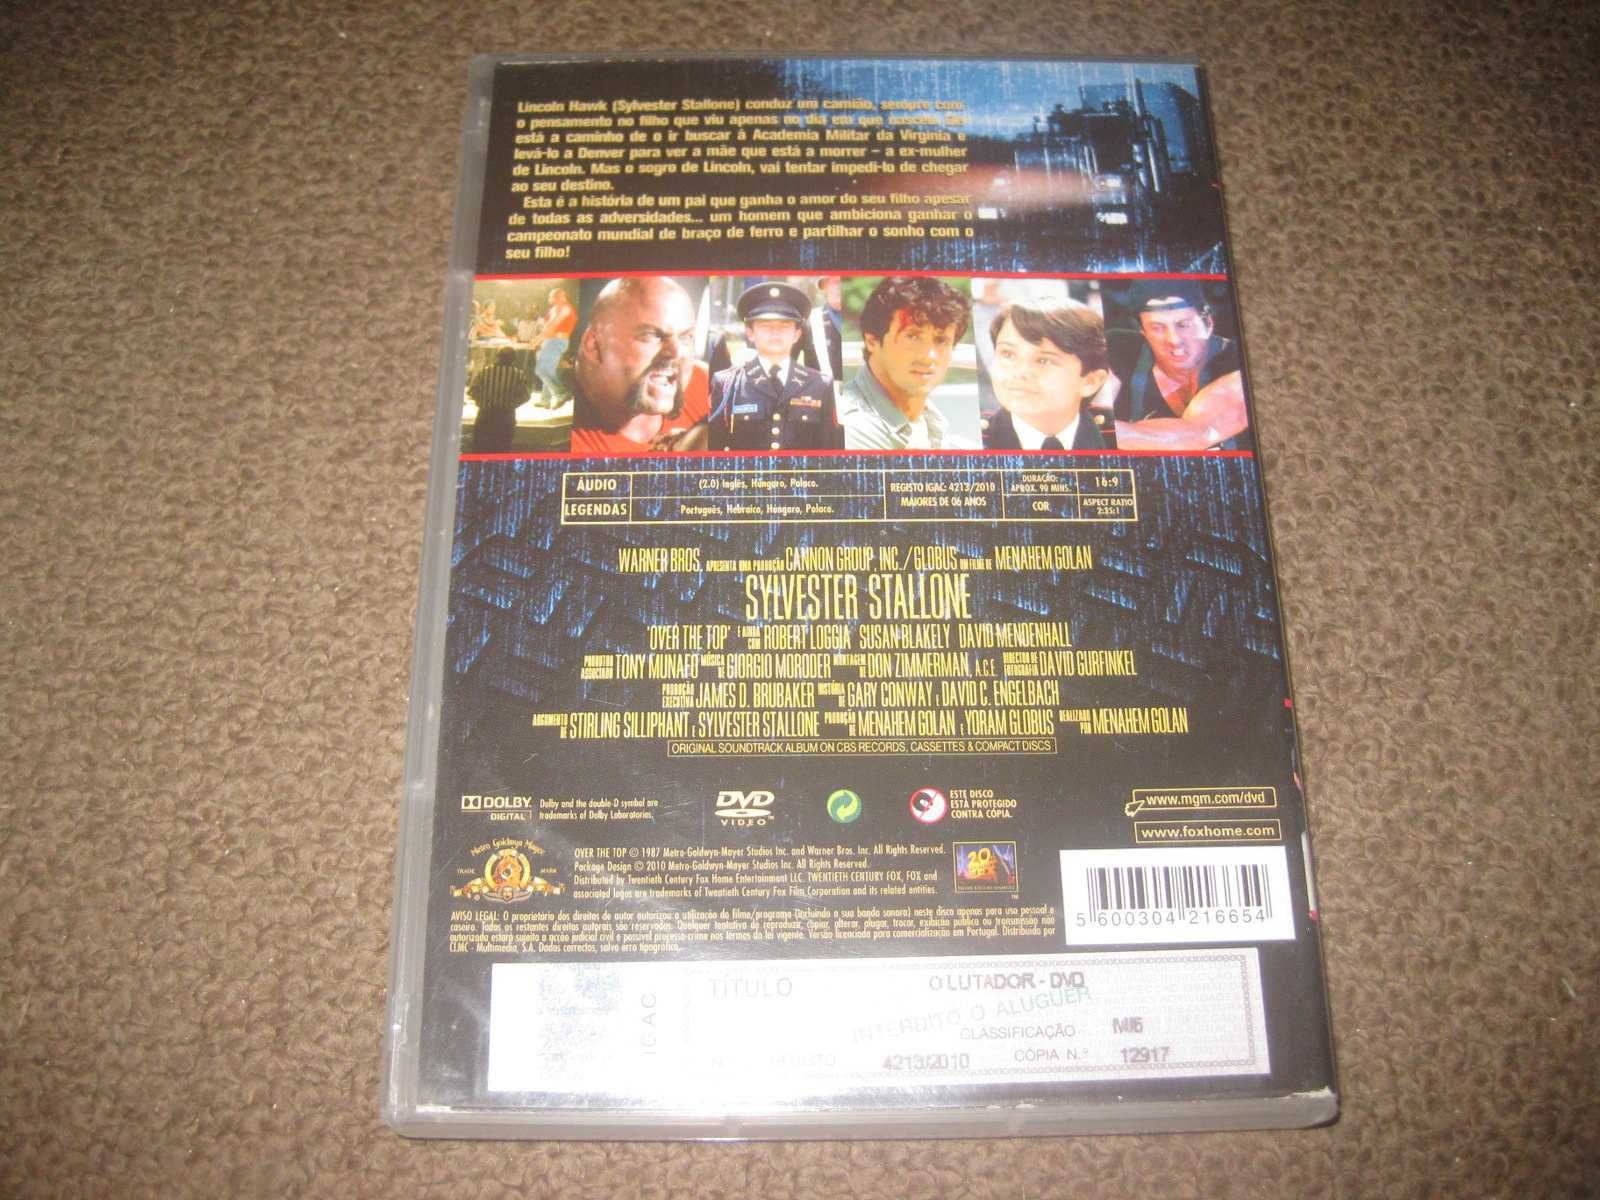 DVD "O Lutador" com Sylvester Stallone